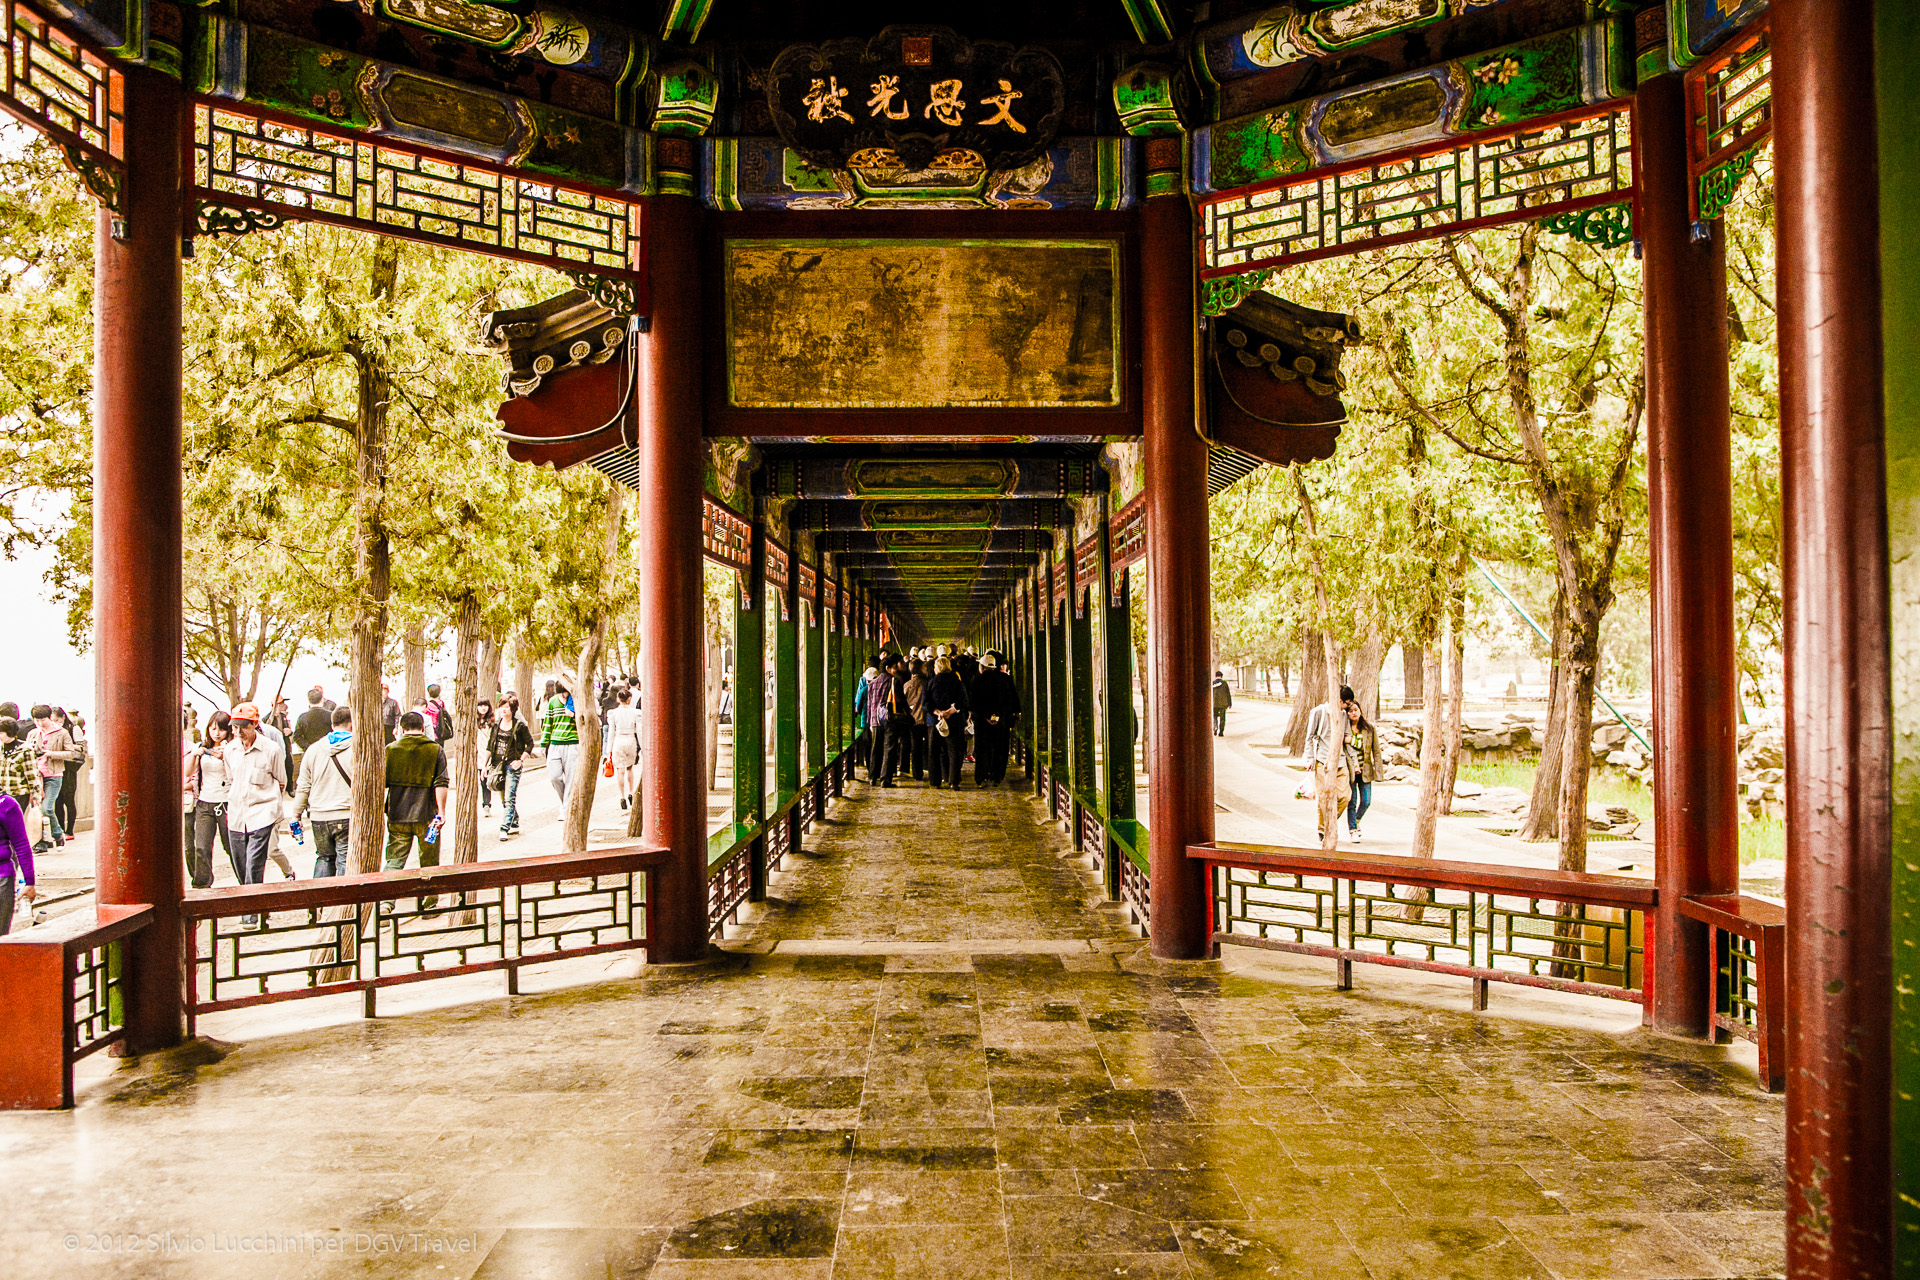 Chengdu-viaggio-in-cina-dgvtravel.jpg